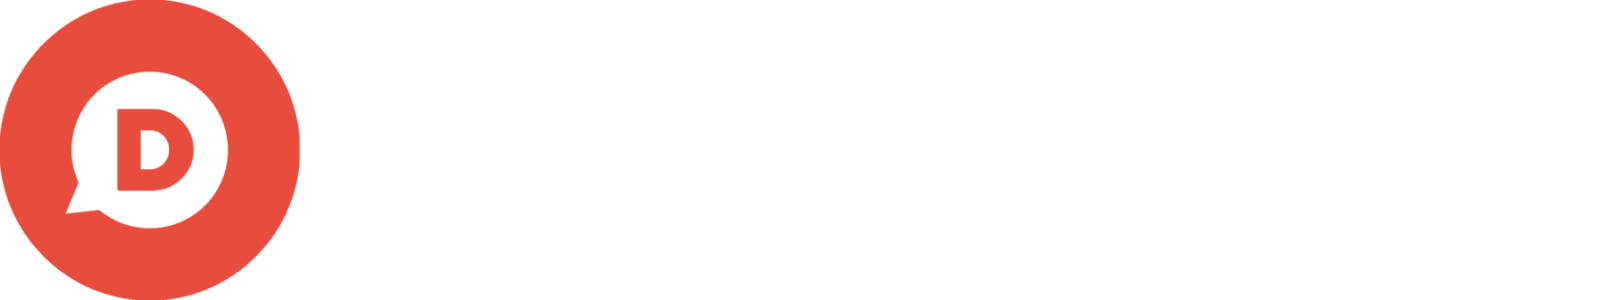 D-TS-Online